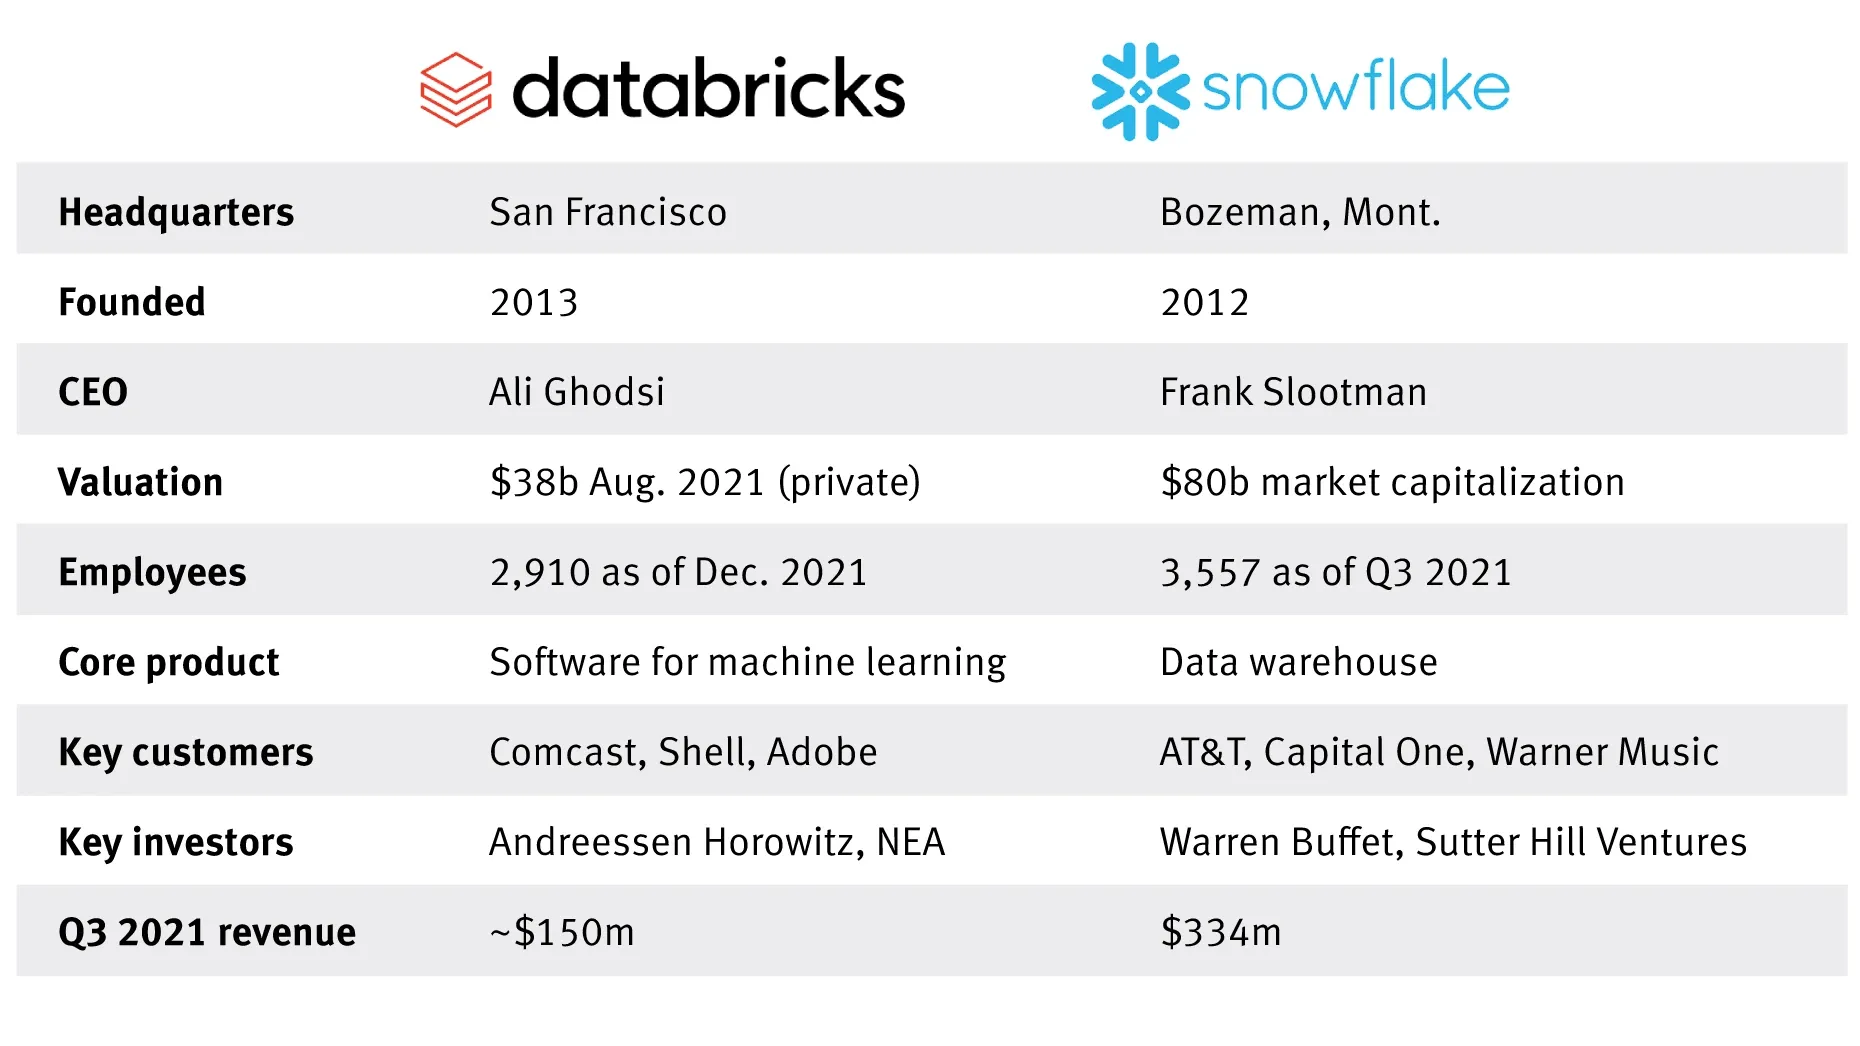 Snowflake vs Databricks Analysis